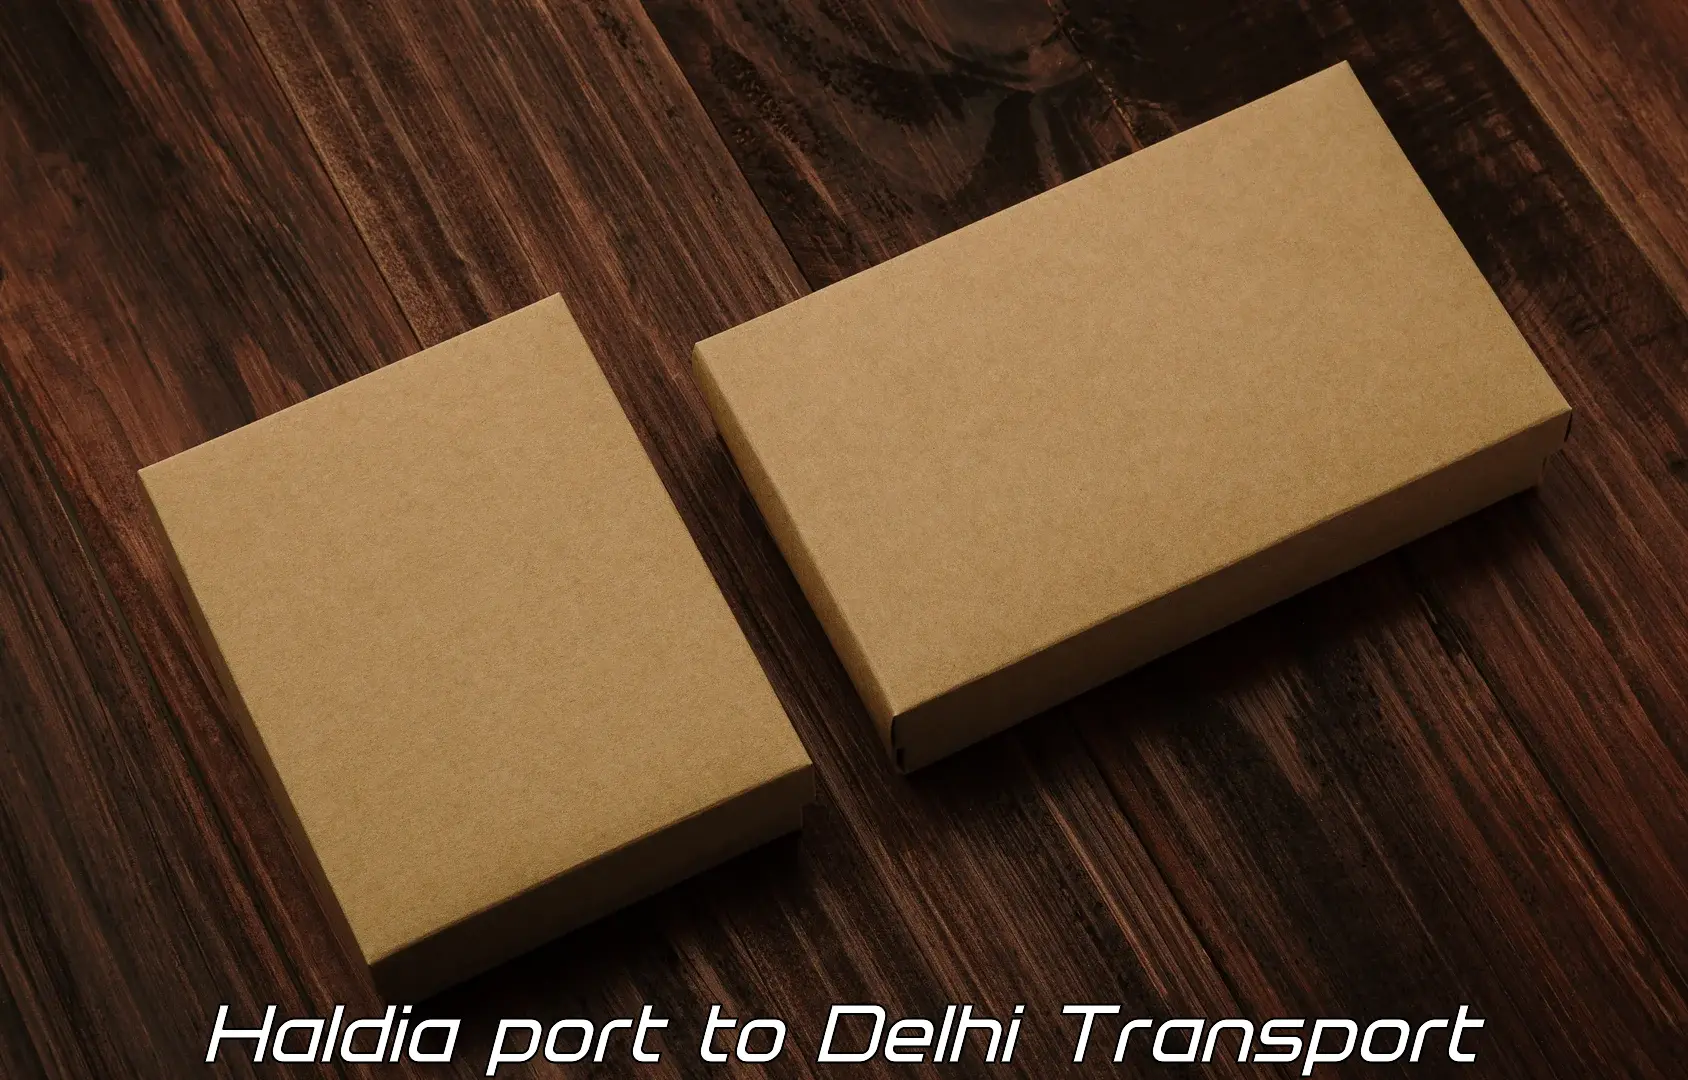 Logistics transportation services Haldia port to East Delhi